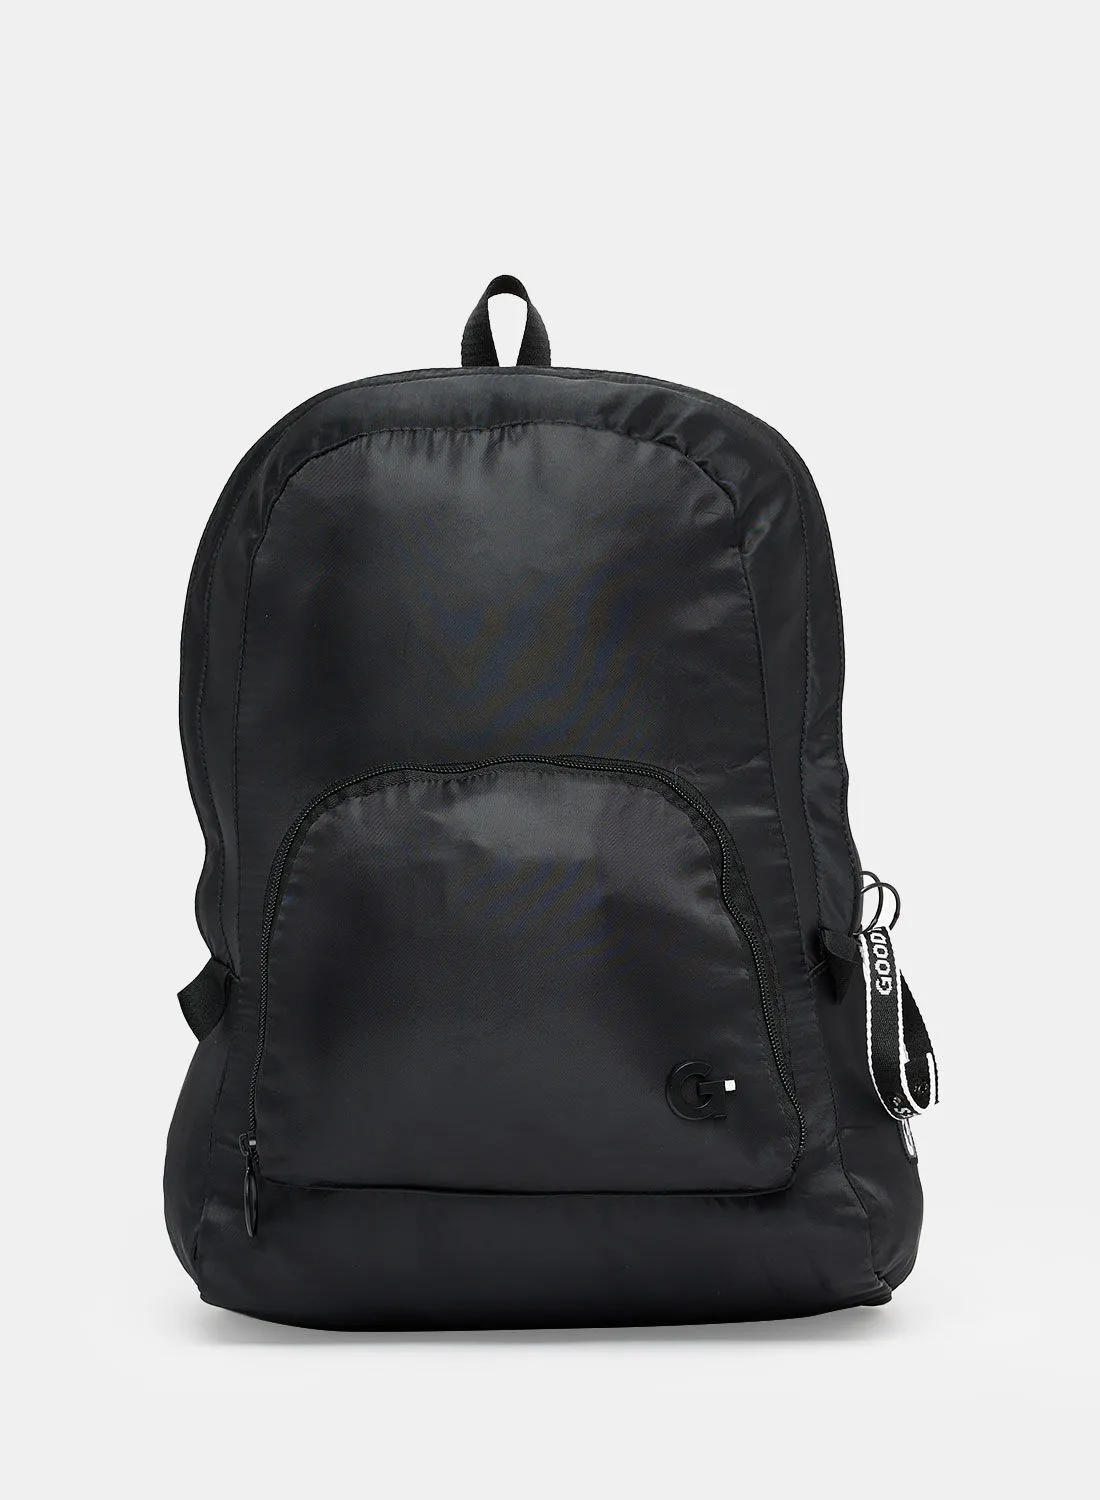 Goodtimes Sydney Packaway Backpack Black